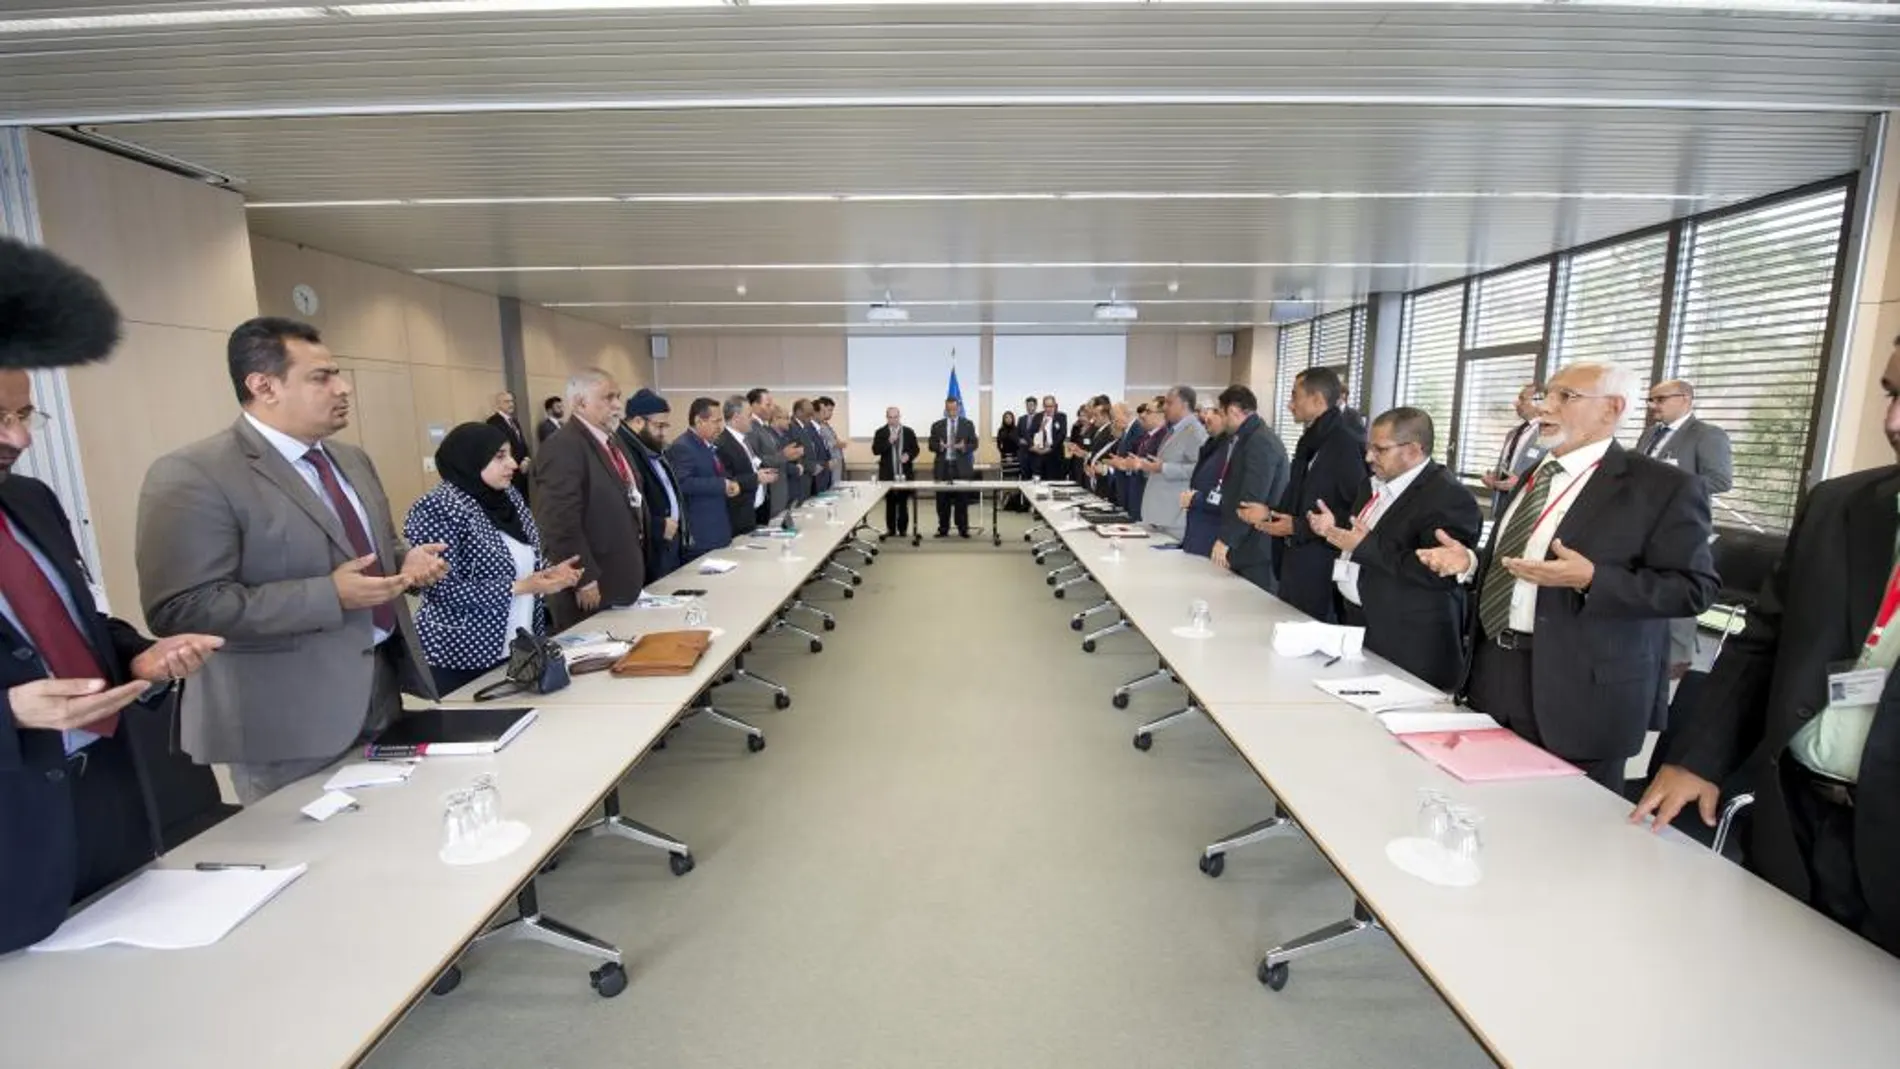 Varios respresentantes durante las negociaciones de paz sobre Yemen llevadas a cabo en la región de Macolin/Magglingen (Suiza) hoy, 15 de diciembre de 2015